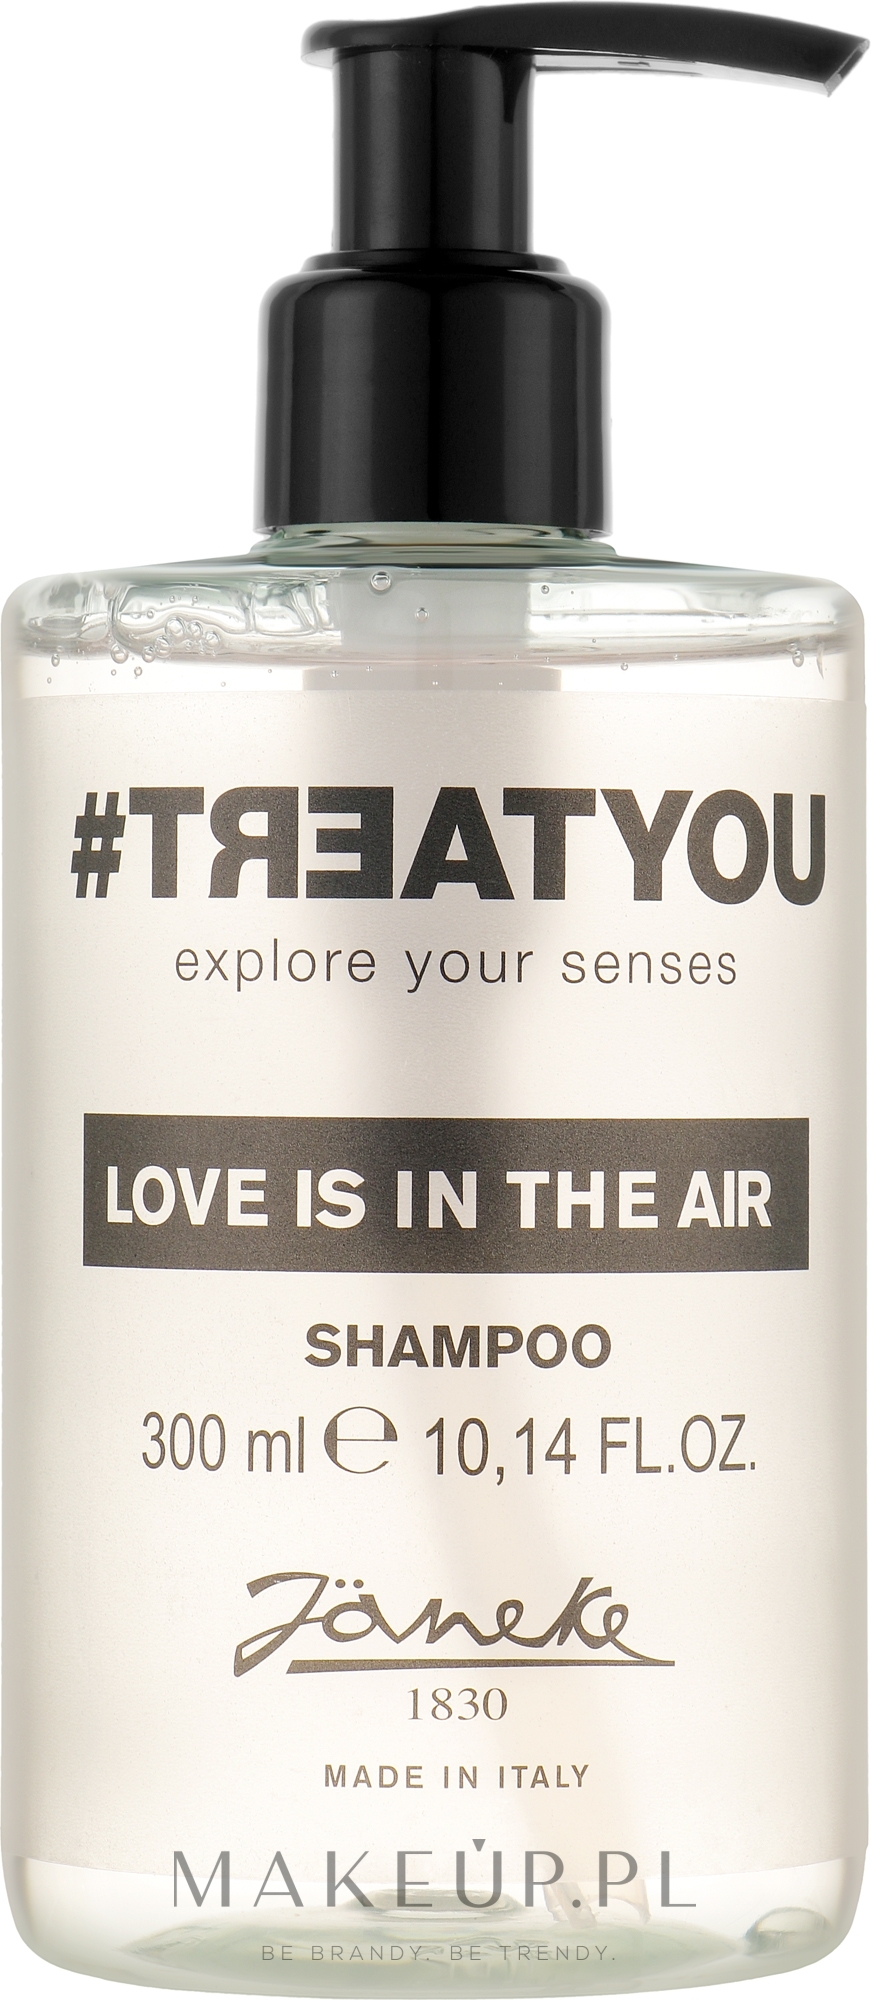 Szampon do włosów - Janeke #Treatyou Love Is In The Air Shampoo — Zdjęcie 300 ml